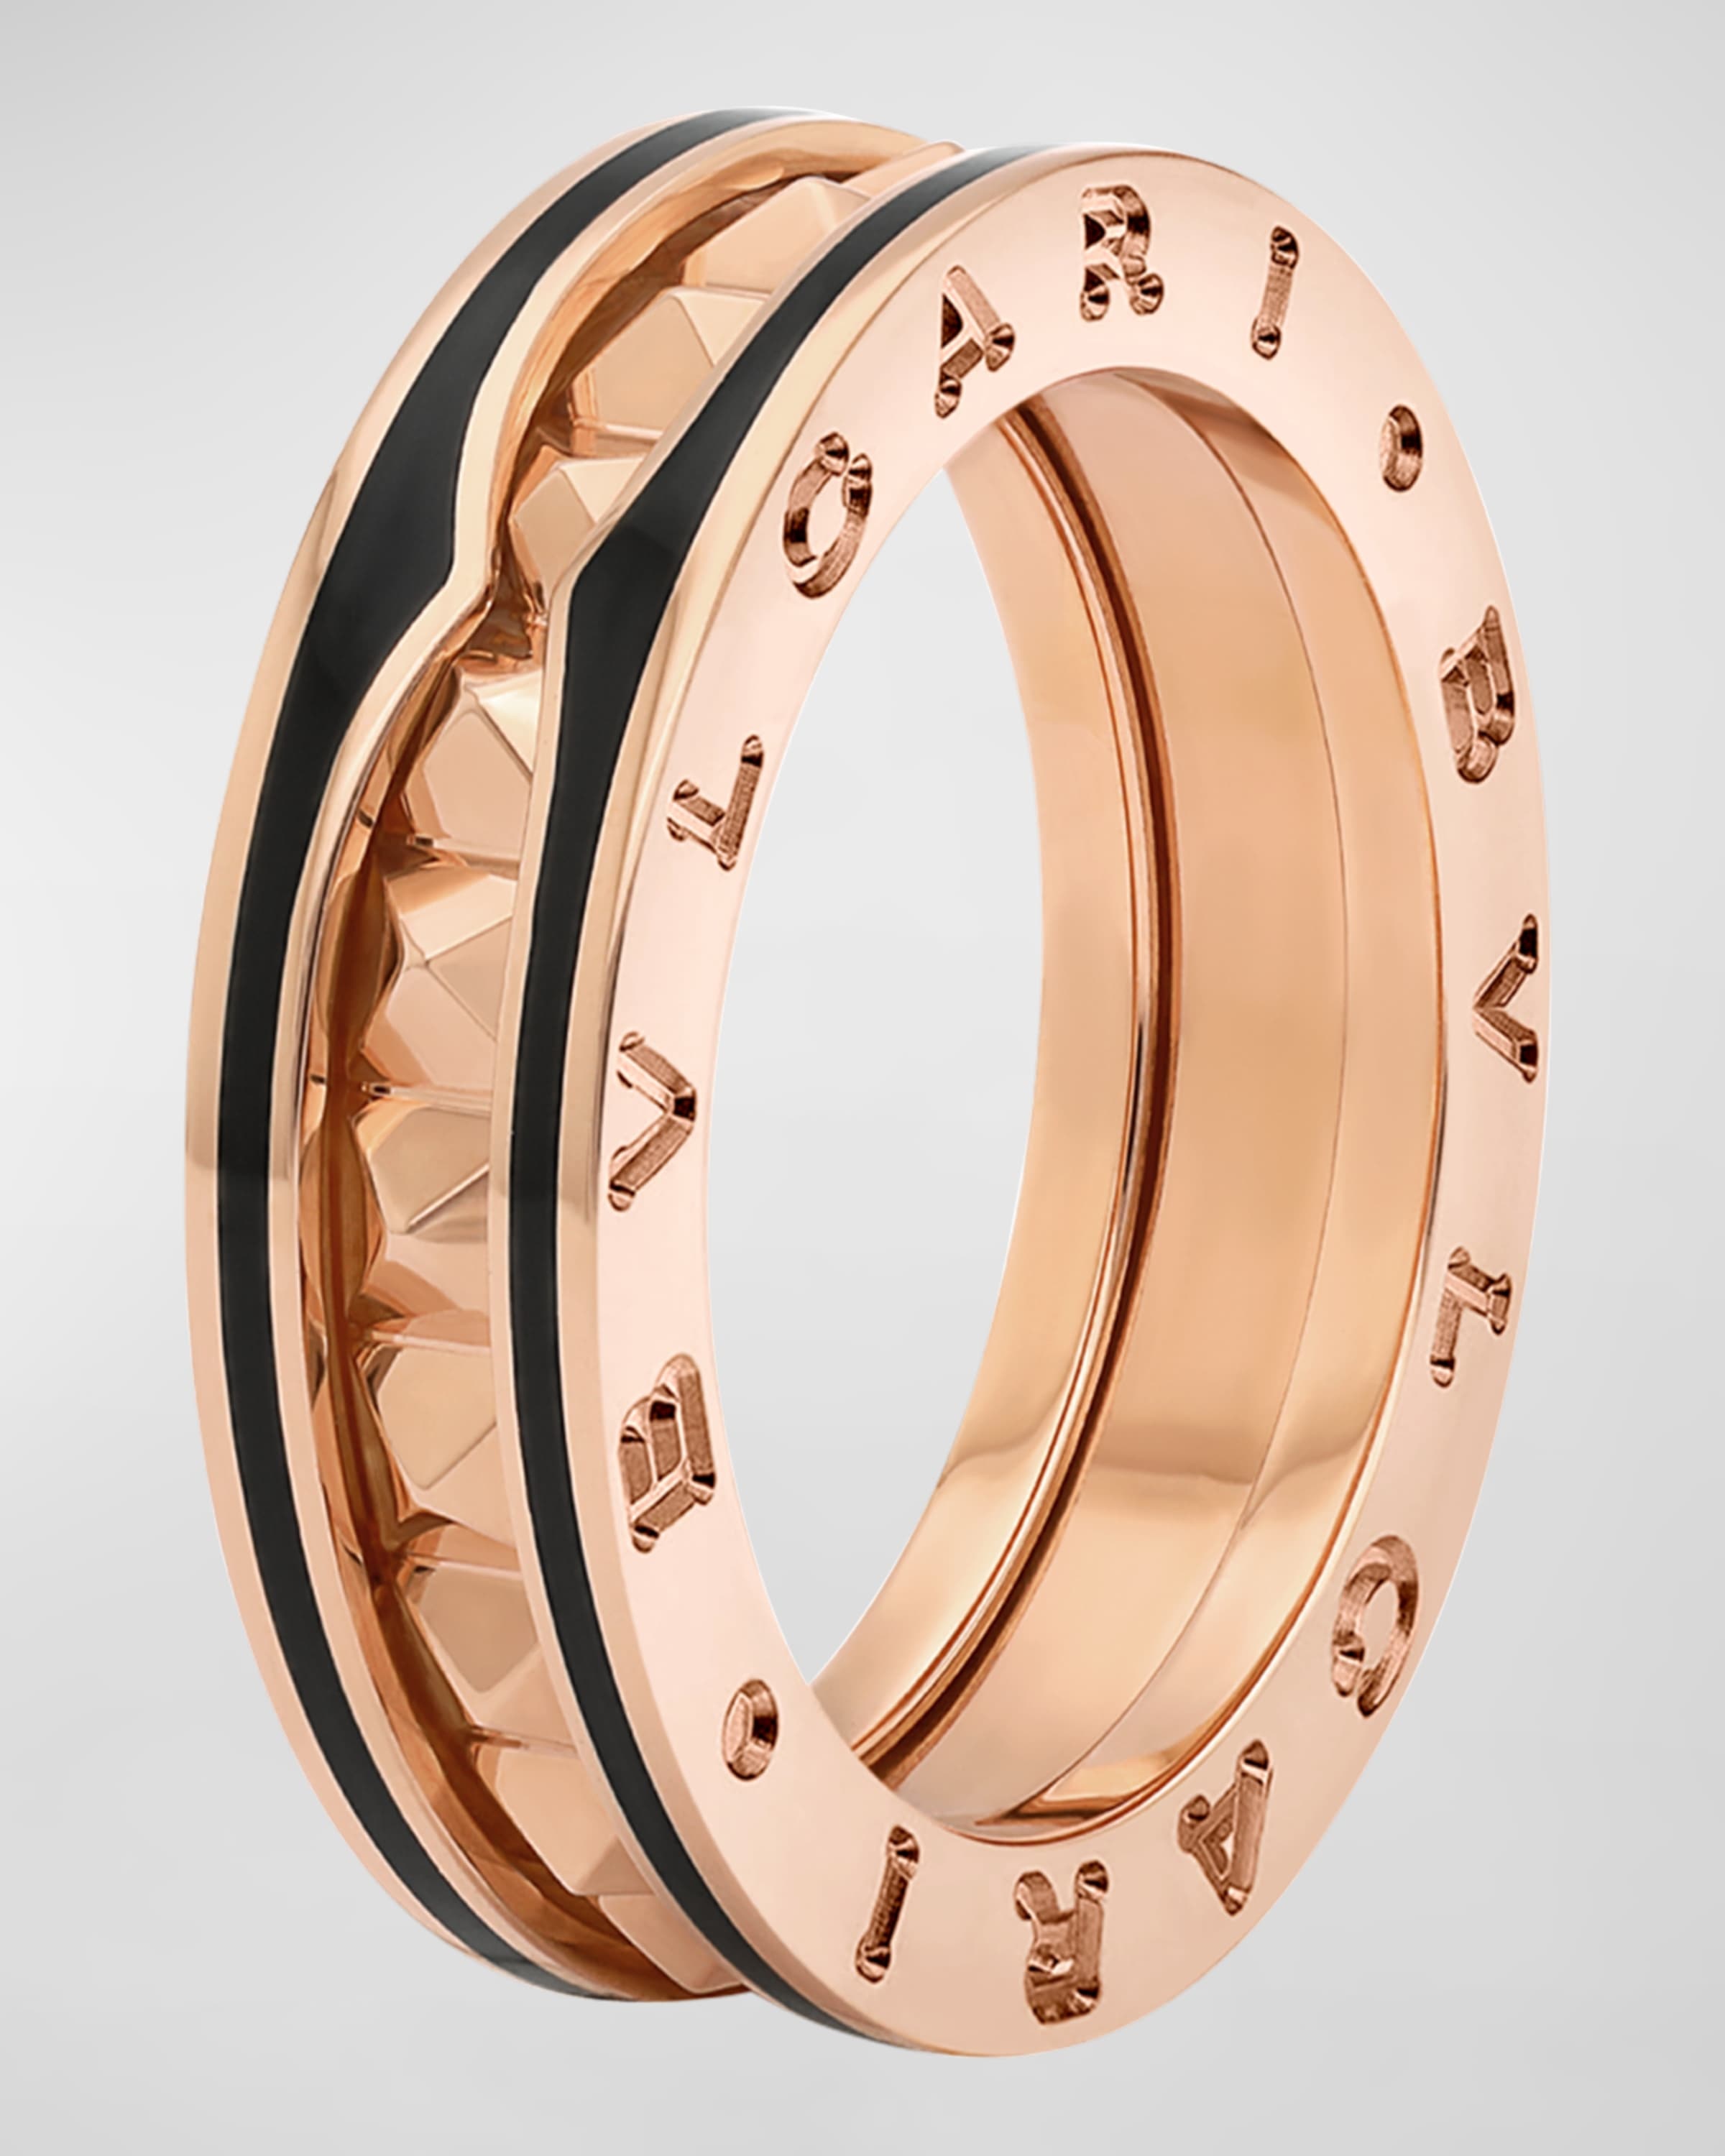 B.Zero1 Rose Gold Ring with Black Ceramic Edge, EU 52 / US 6 - 1